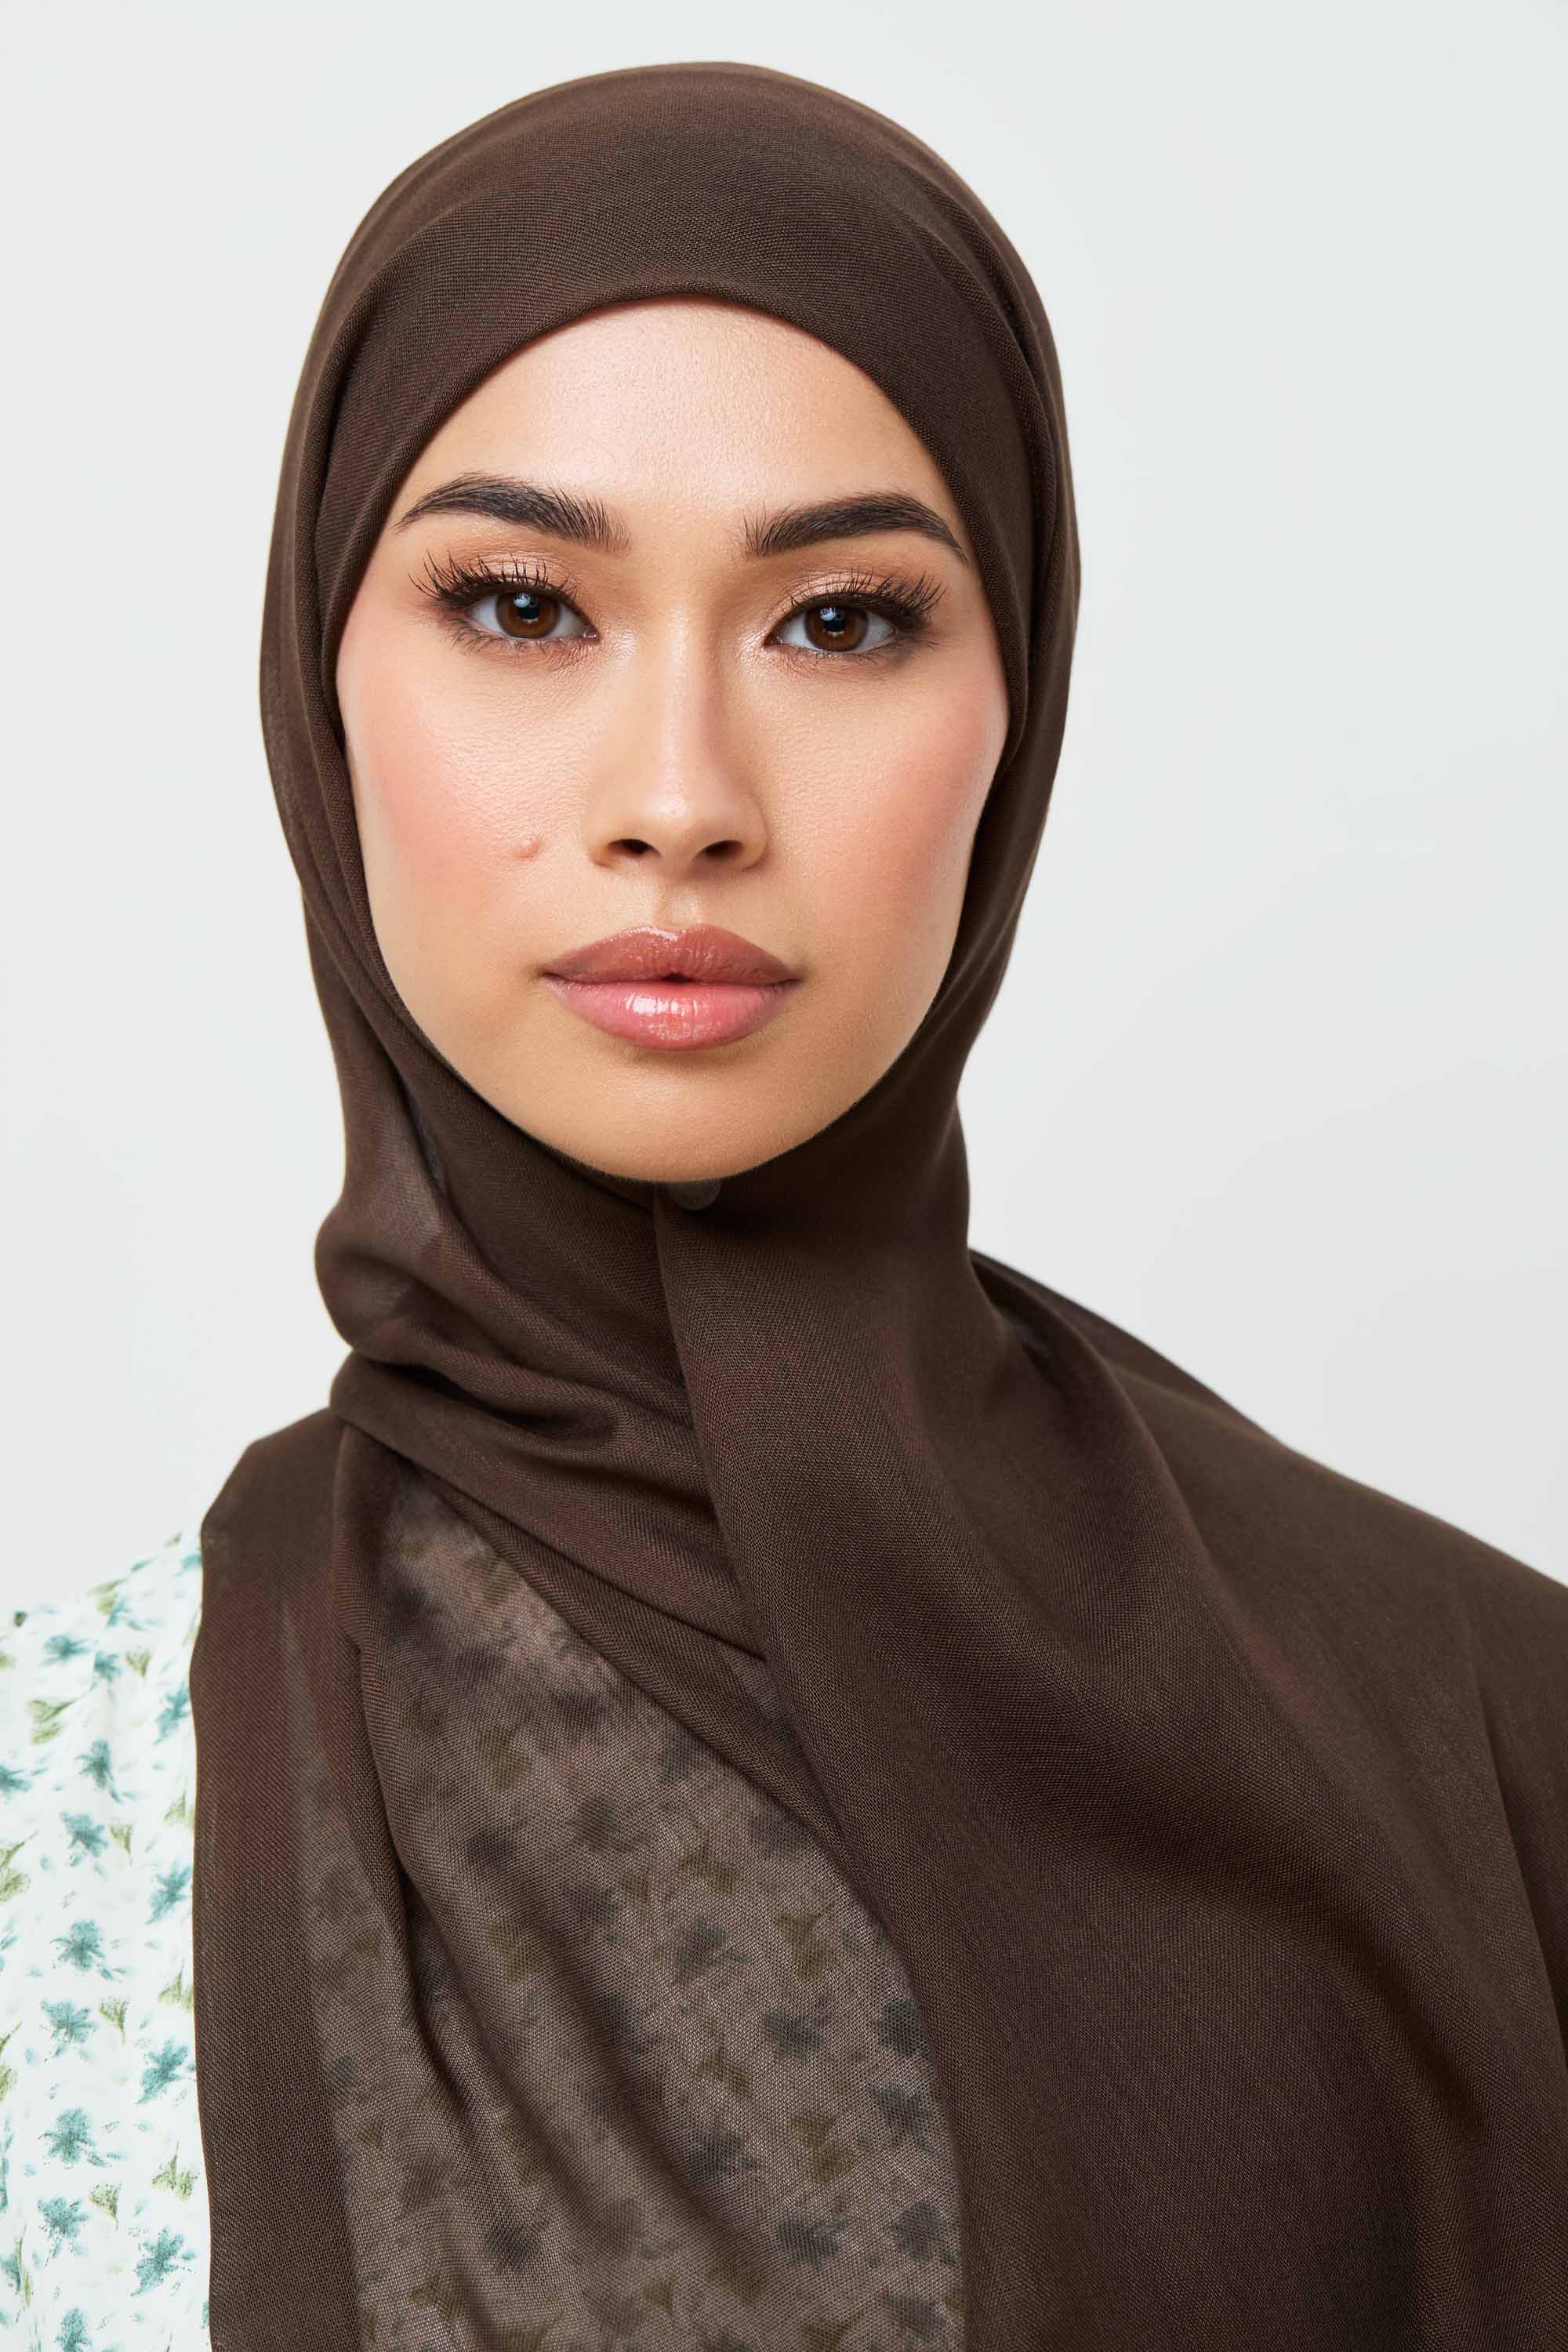 Modal Hijab - Demitasse Veiled 